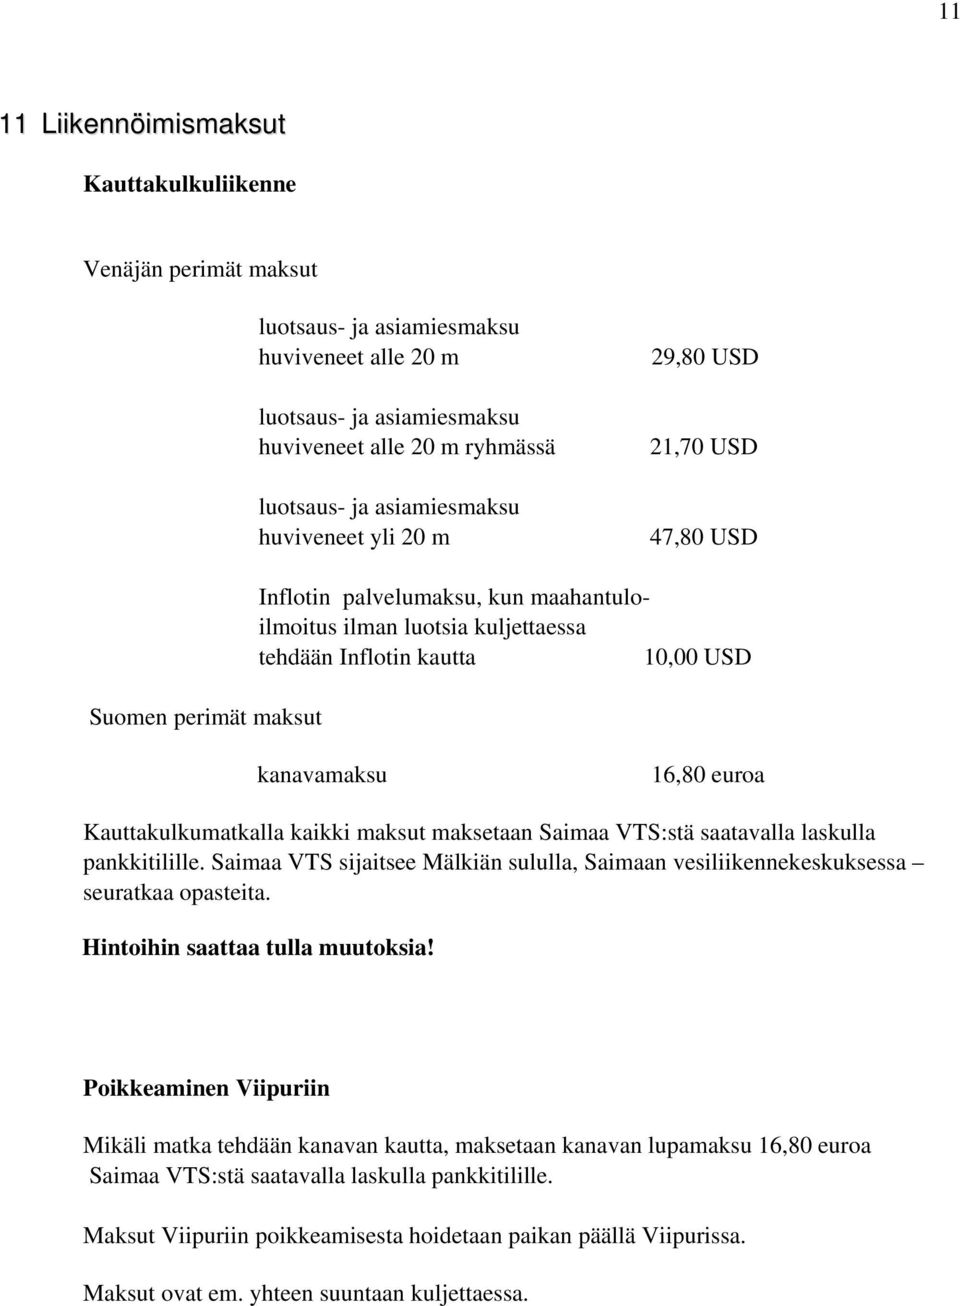 euroa Kauttakulkumatkalla kaikki maksut maksetaan Saimaa VTS:stä saatavalla laskulla pankkitilille. Saimaa VTS sijaitsee Mälkiän sululla, Saimaan vesiliikennekeskuksessa seuratkaa opasteita.